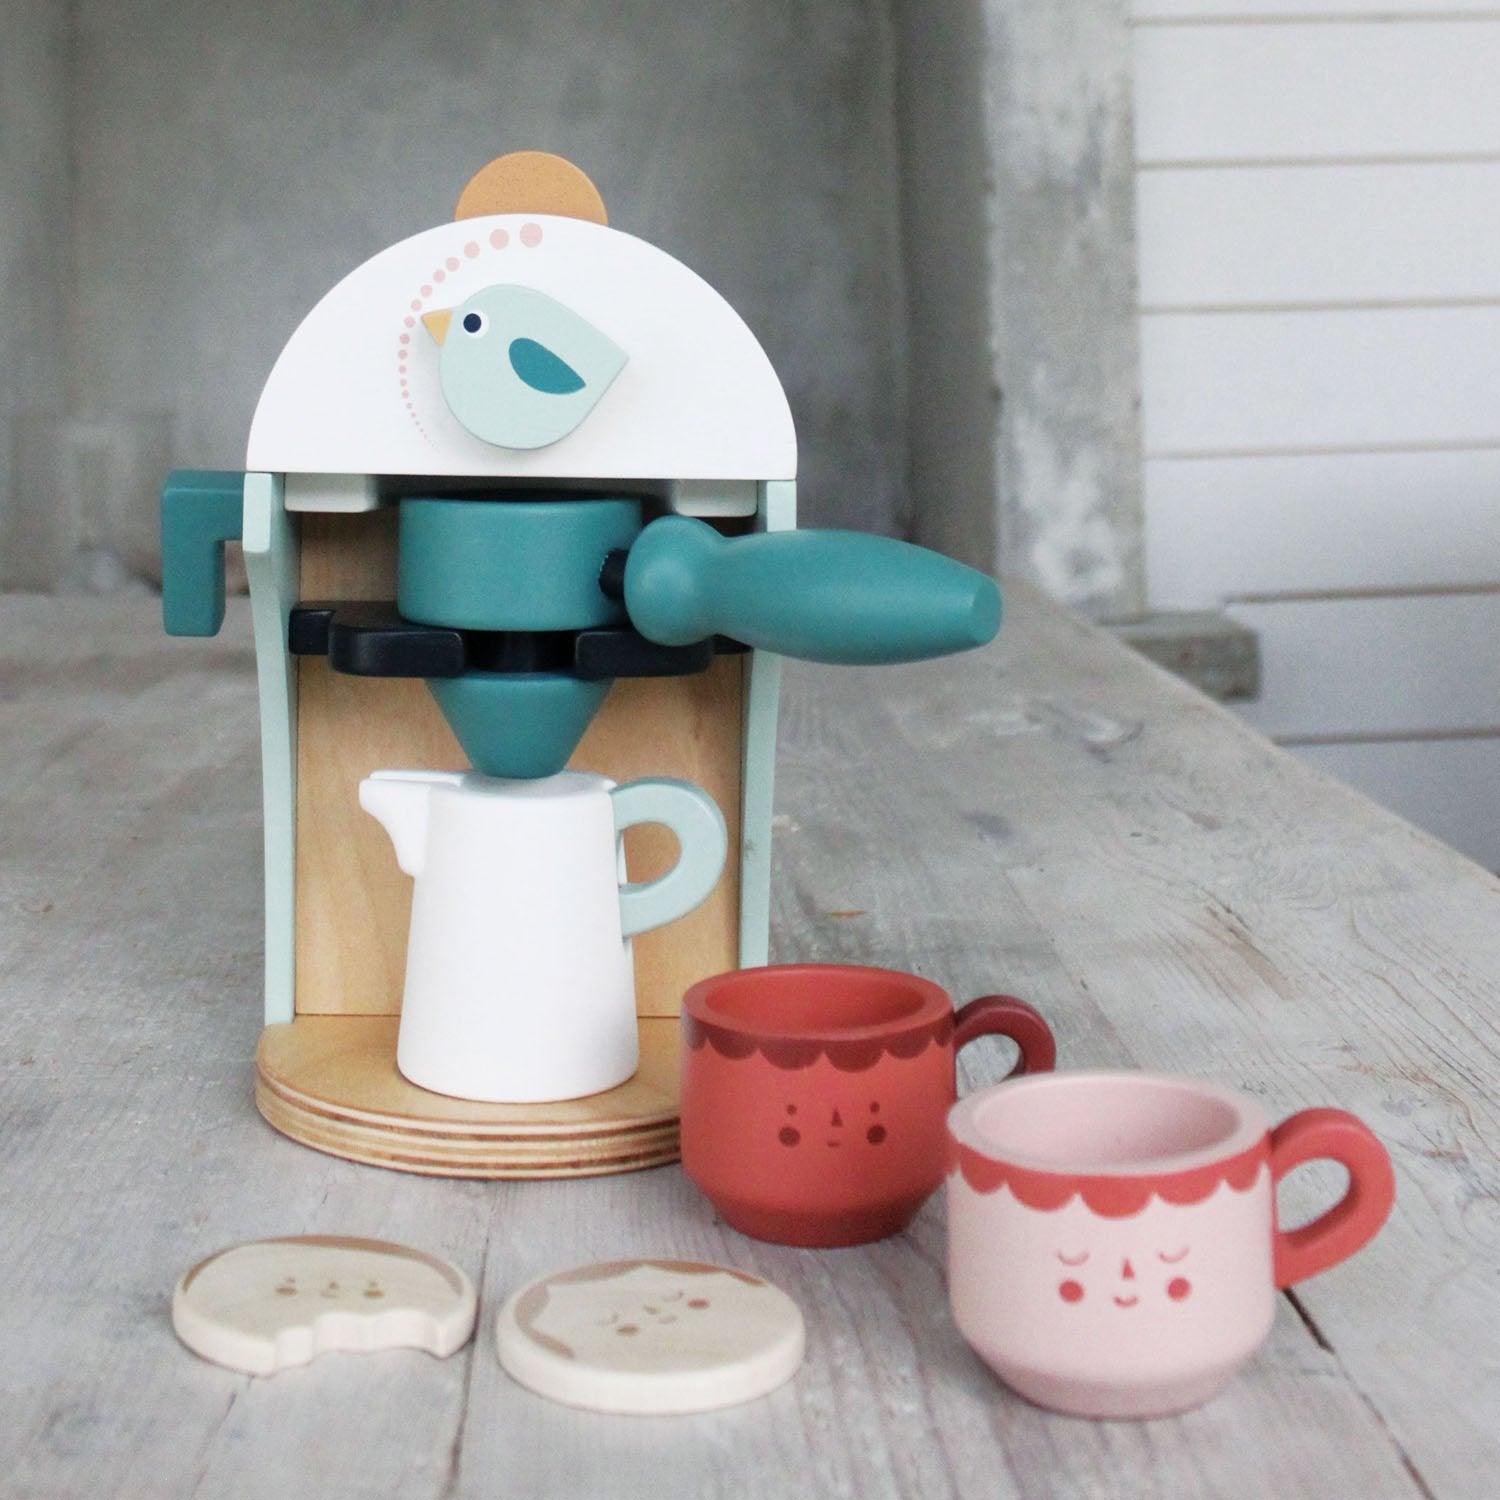 Nježne igračke od listova: babyccino proizvođač drvene aparat za kavu